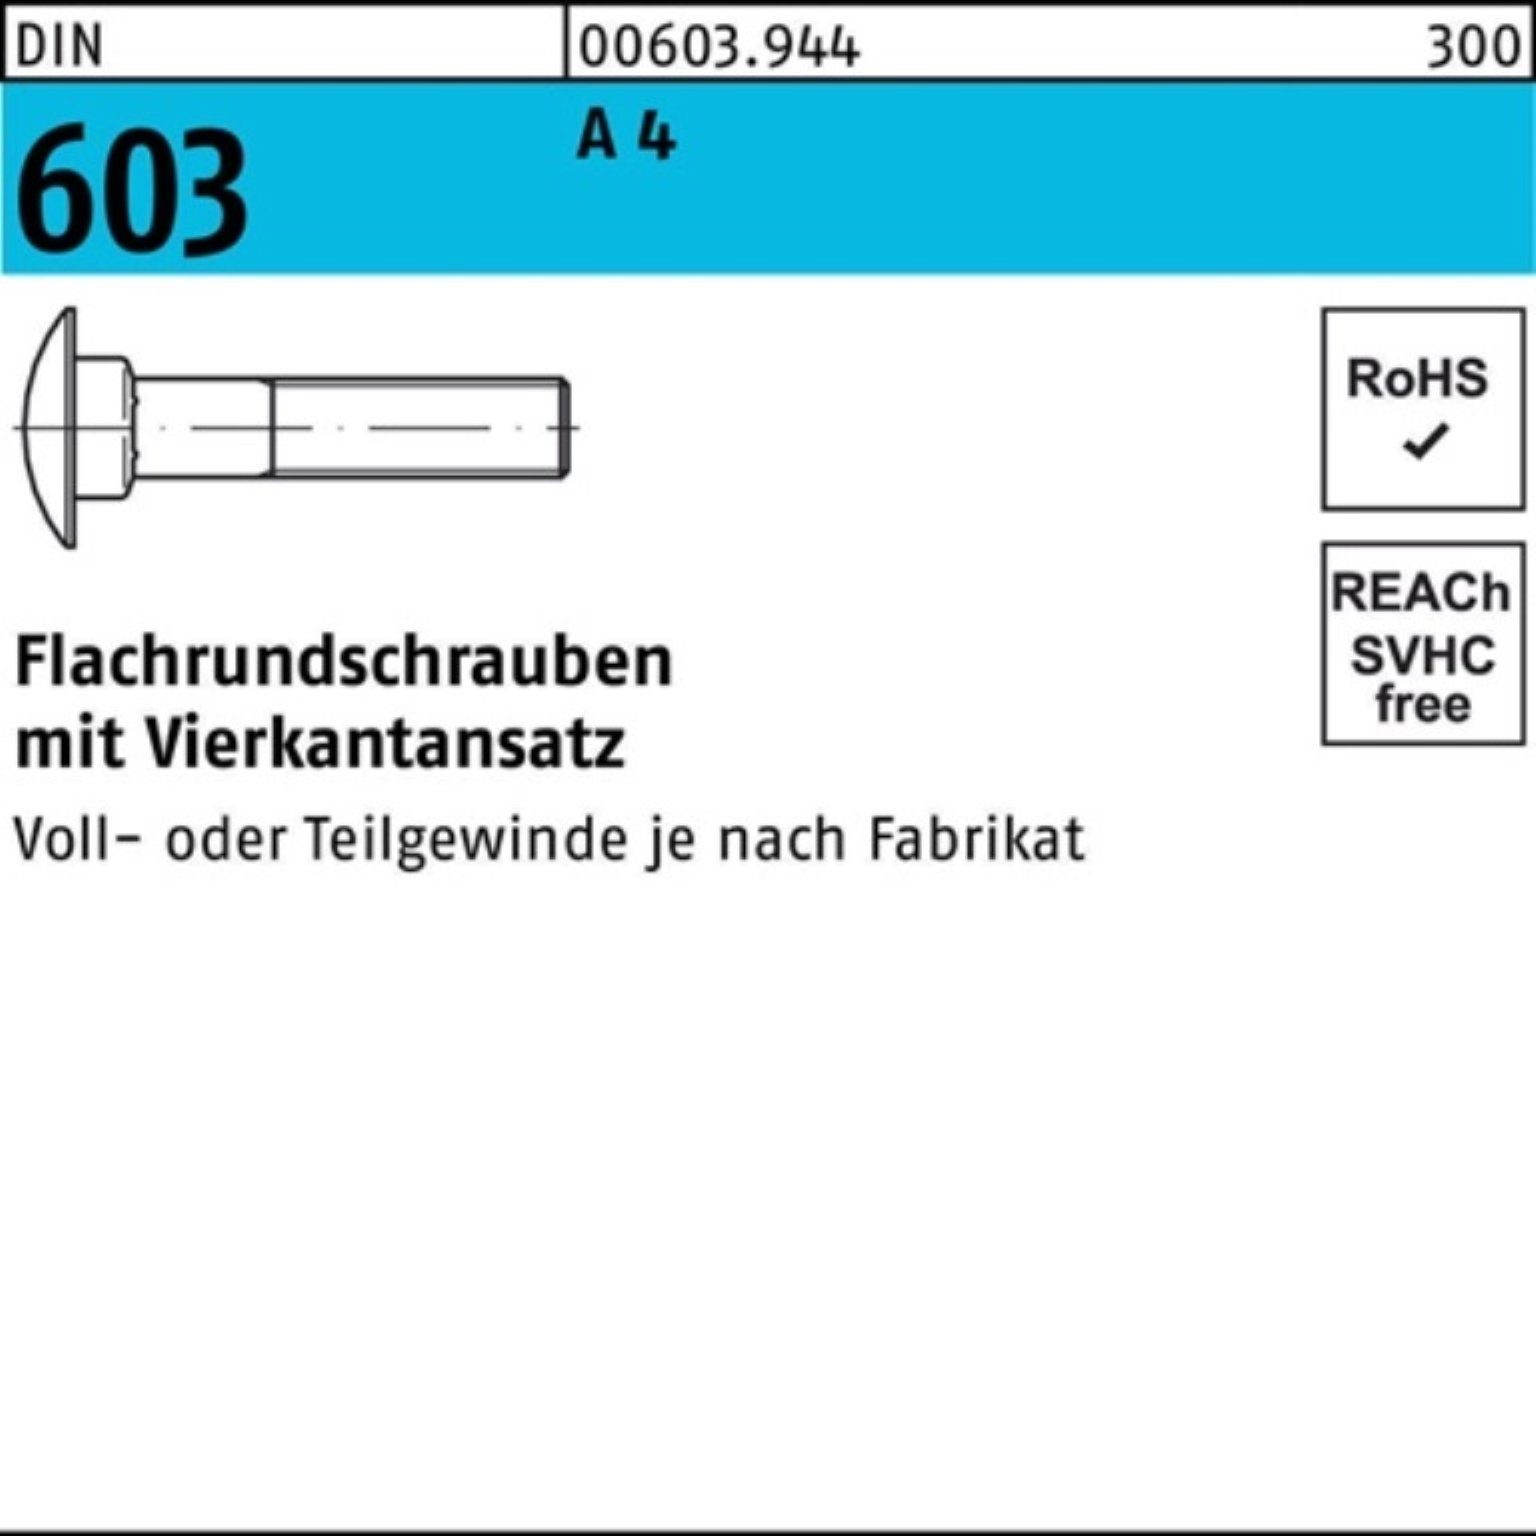 Reyher Schraube 100er Pack Flachrundschraube DIN 603 Vierkantansatz M16x 55 A 4 1 Stü